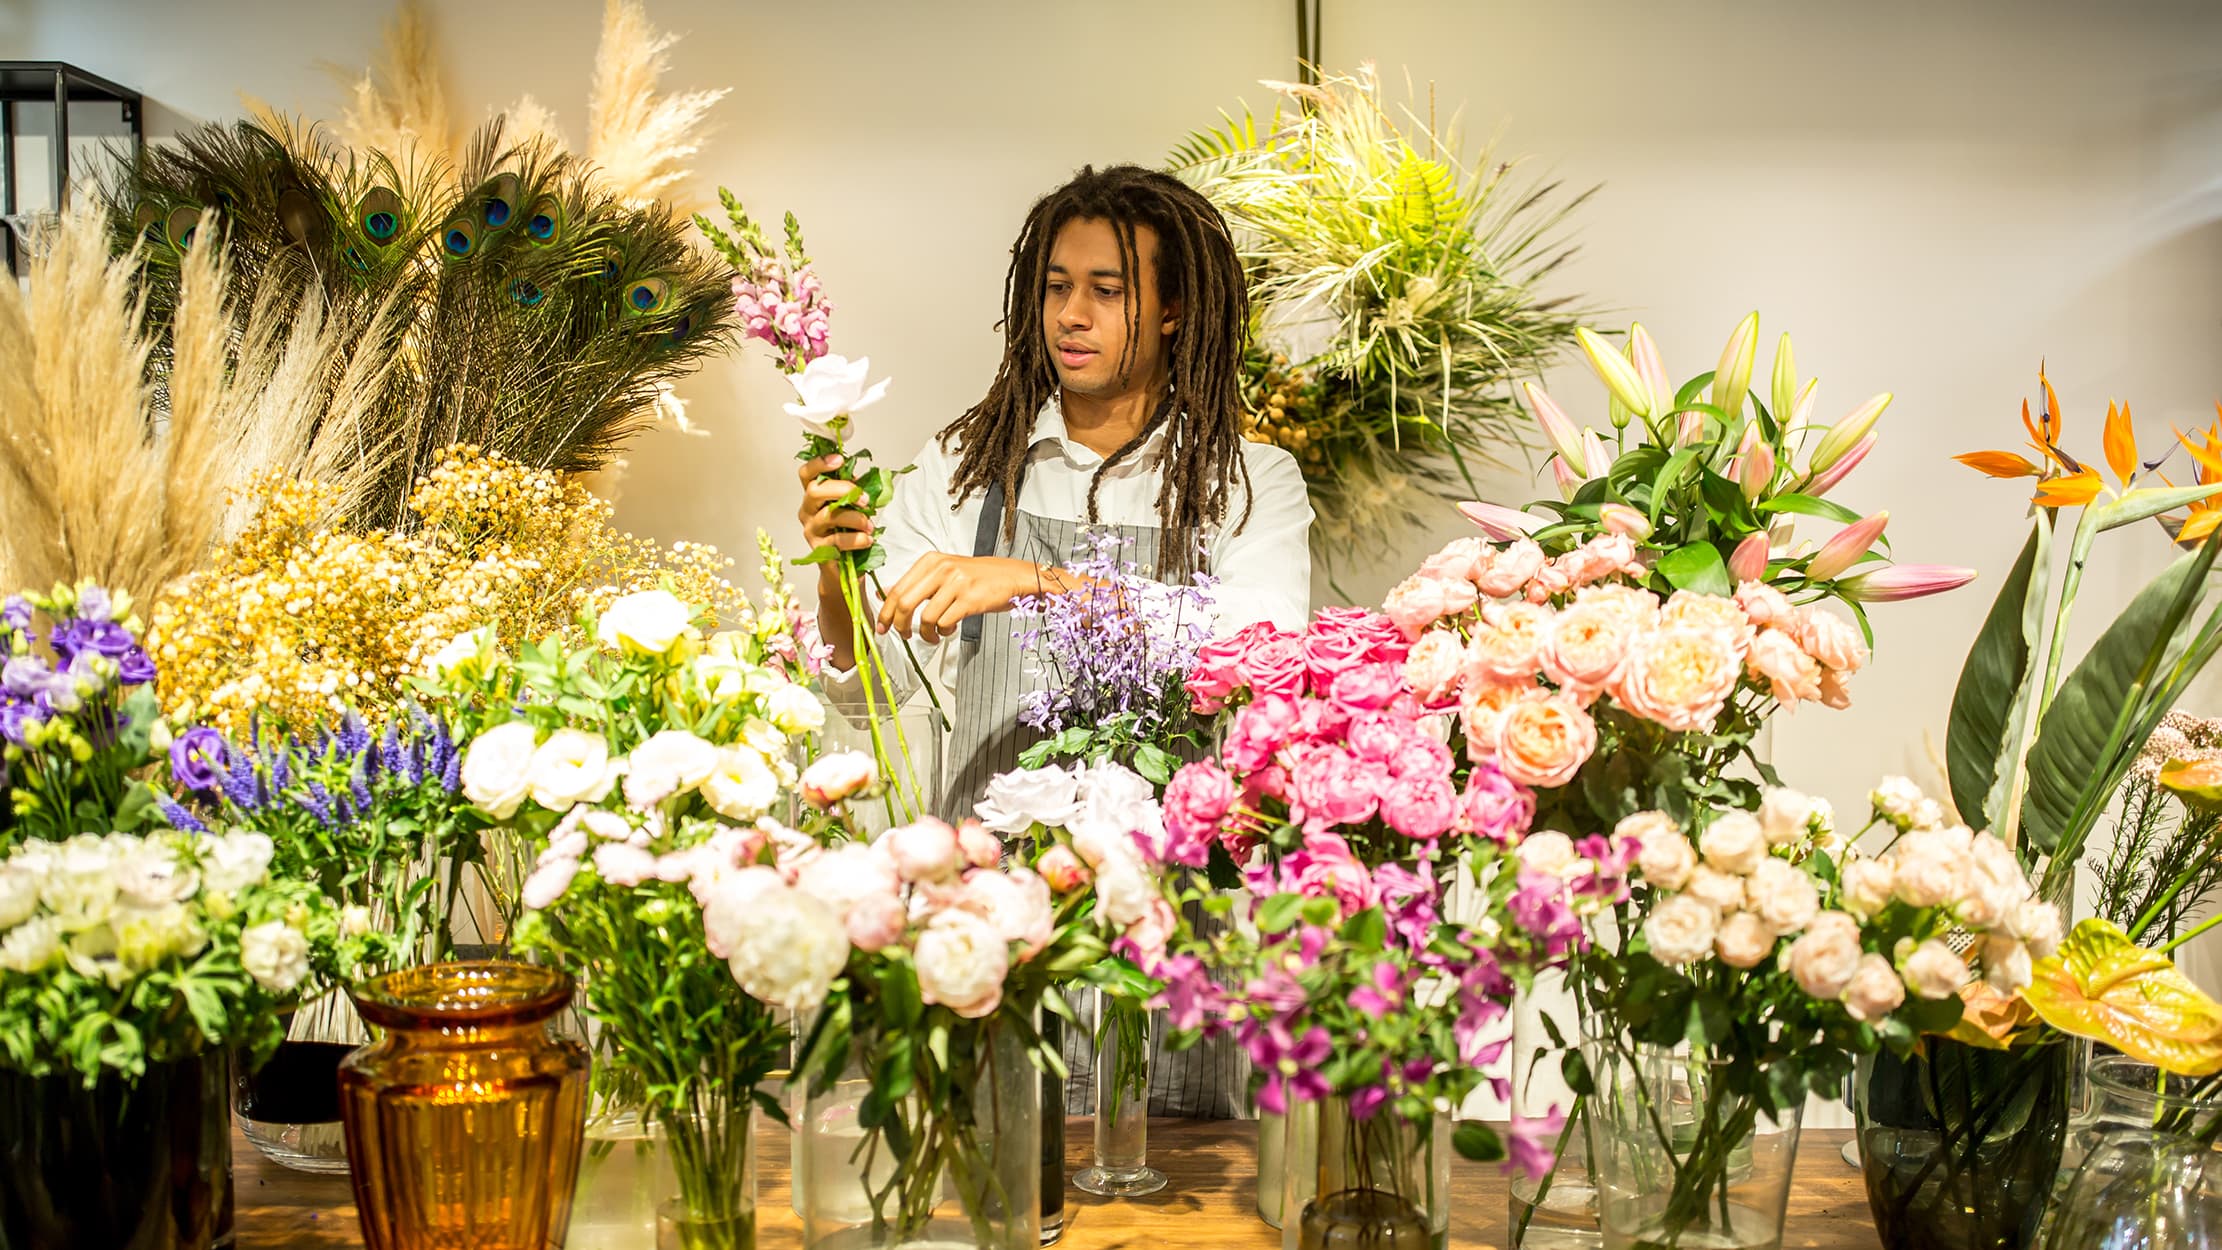 Un homme travaille dans sa petite entreprise : une boutique de fleurs